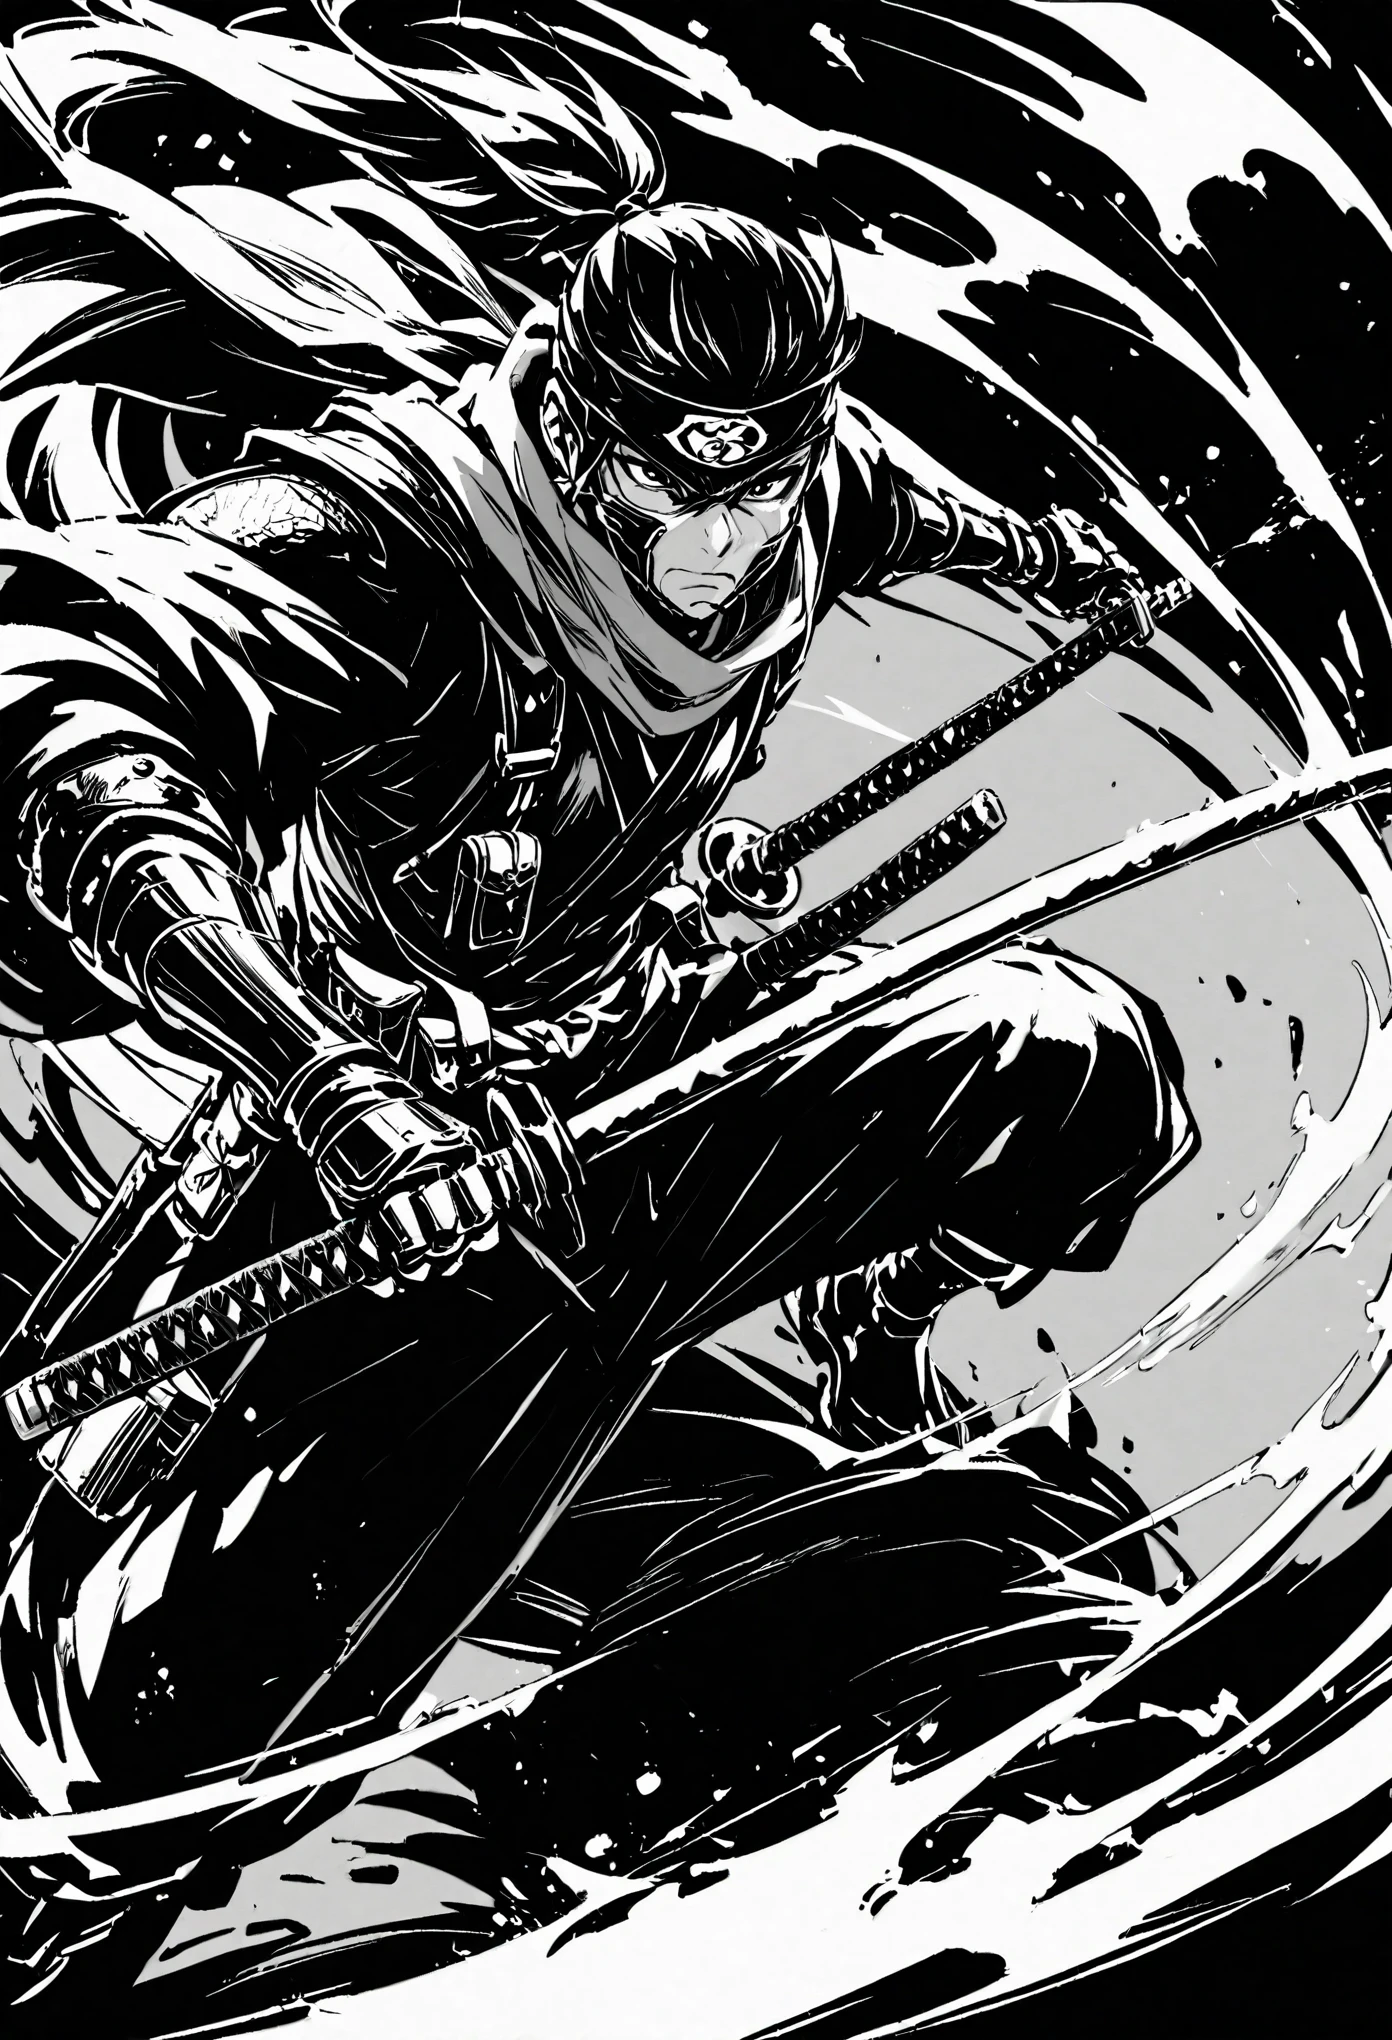 arma, 1 chico, espada, solo, katana, bufanda, tenencia, ninjas, tenencia arma, cola de caballo, brazo protésico, tenencia espada, bolsa, ropa japonesa, armadura